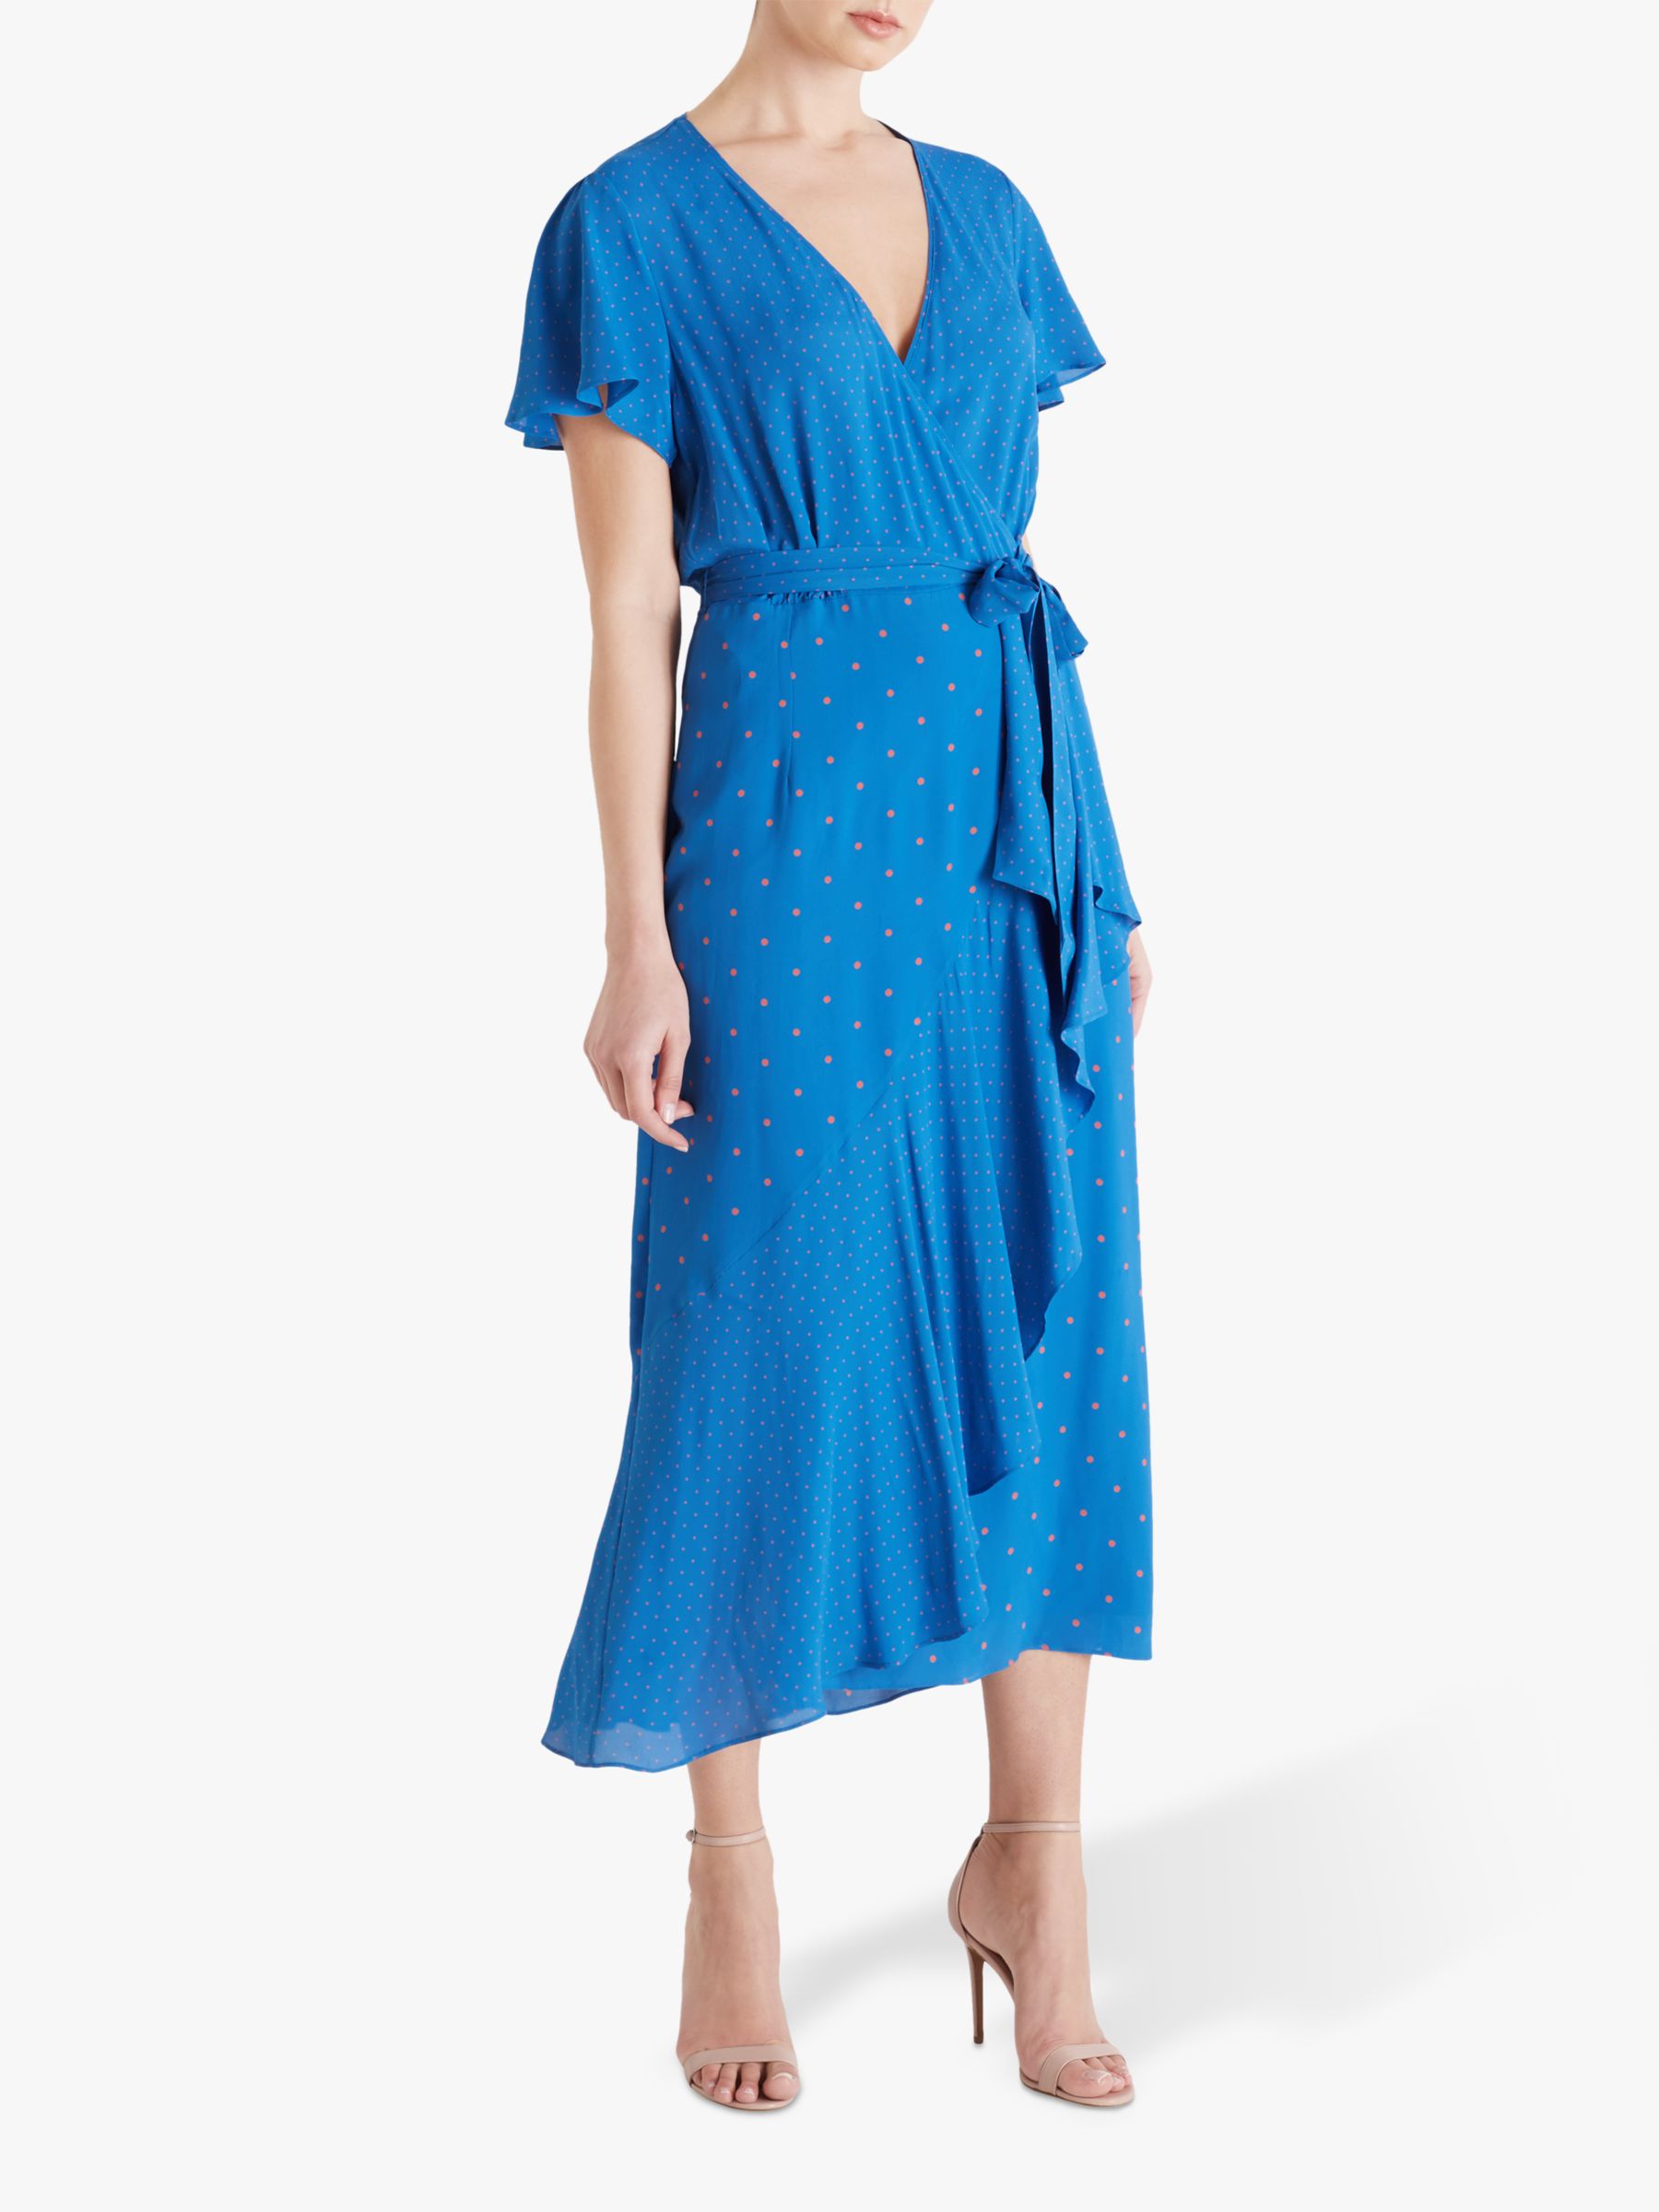 Fenn Wright Manson Carla Wrap Dress, Blue/Apricot Spot